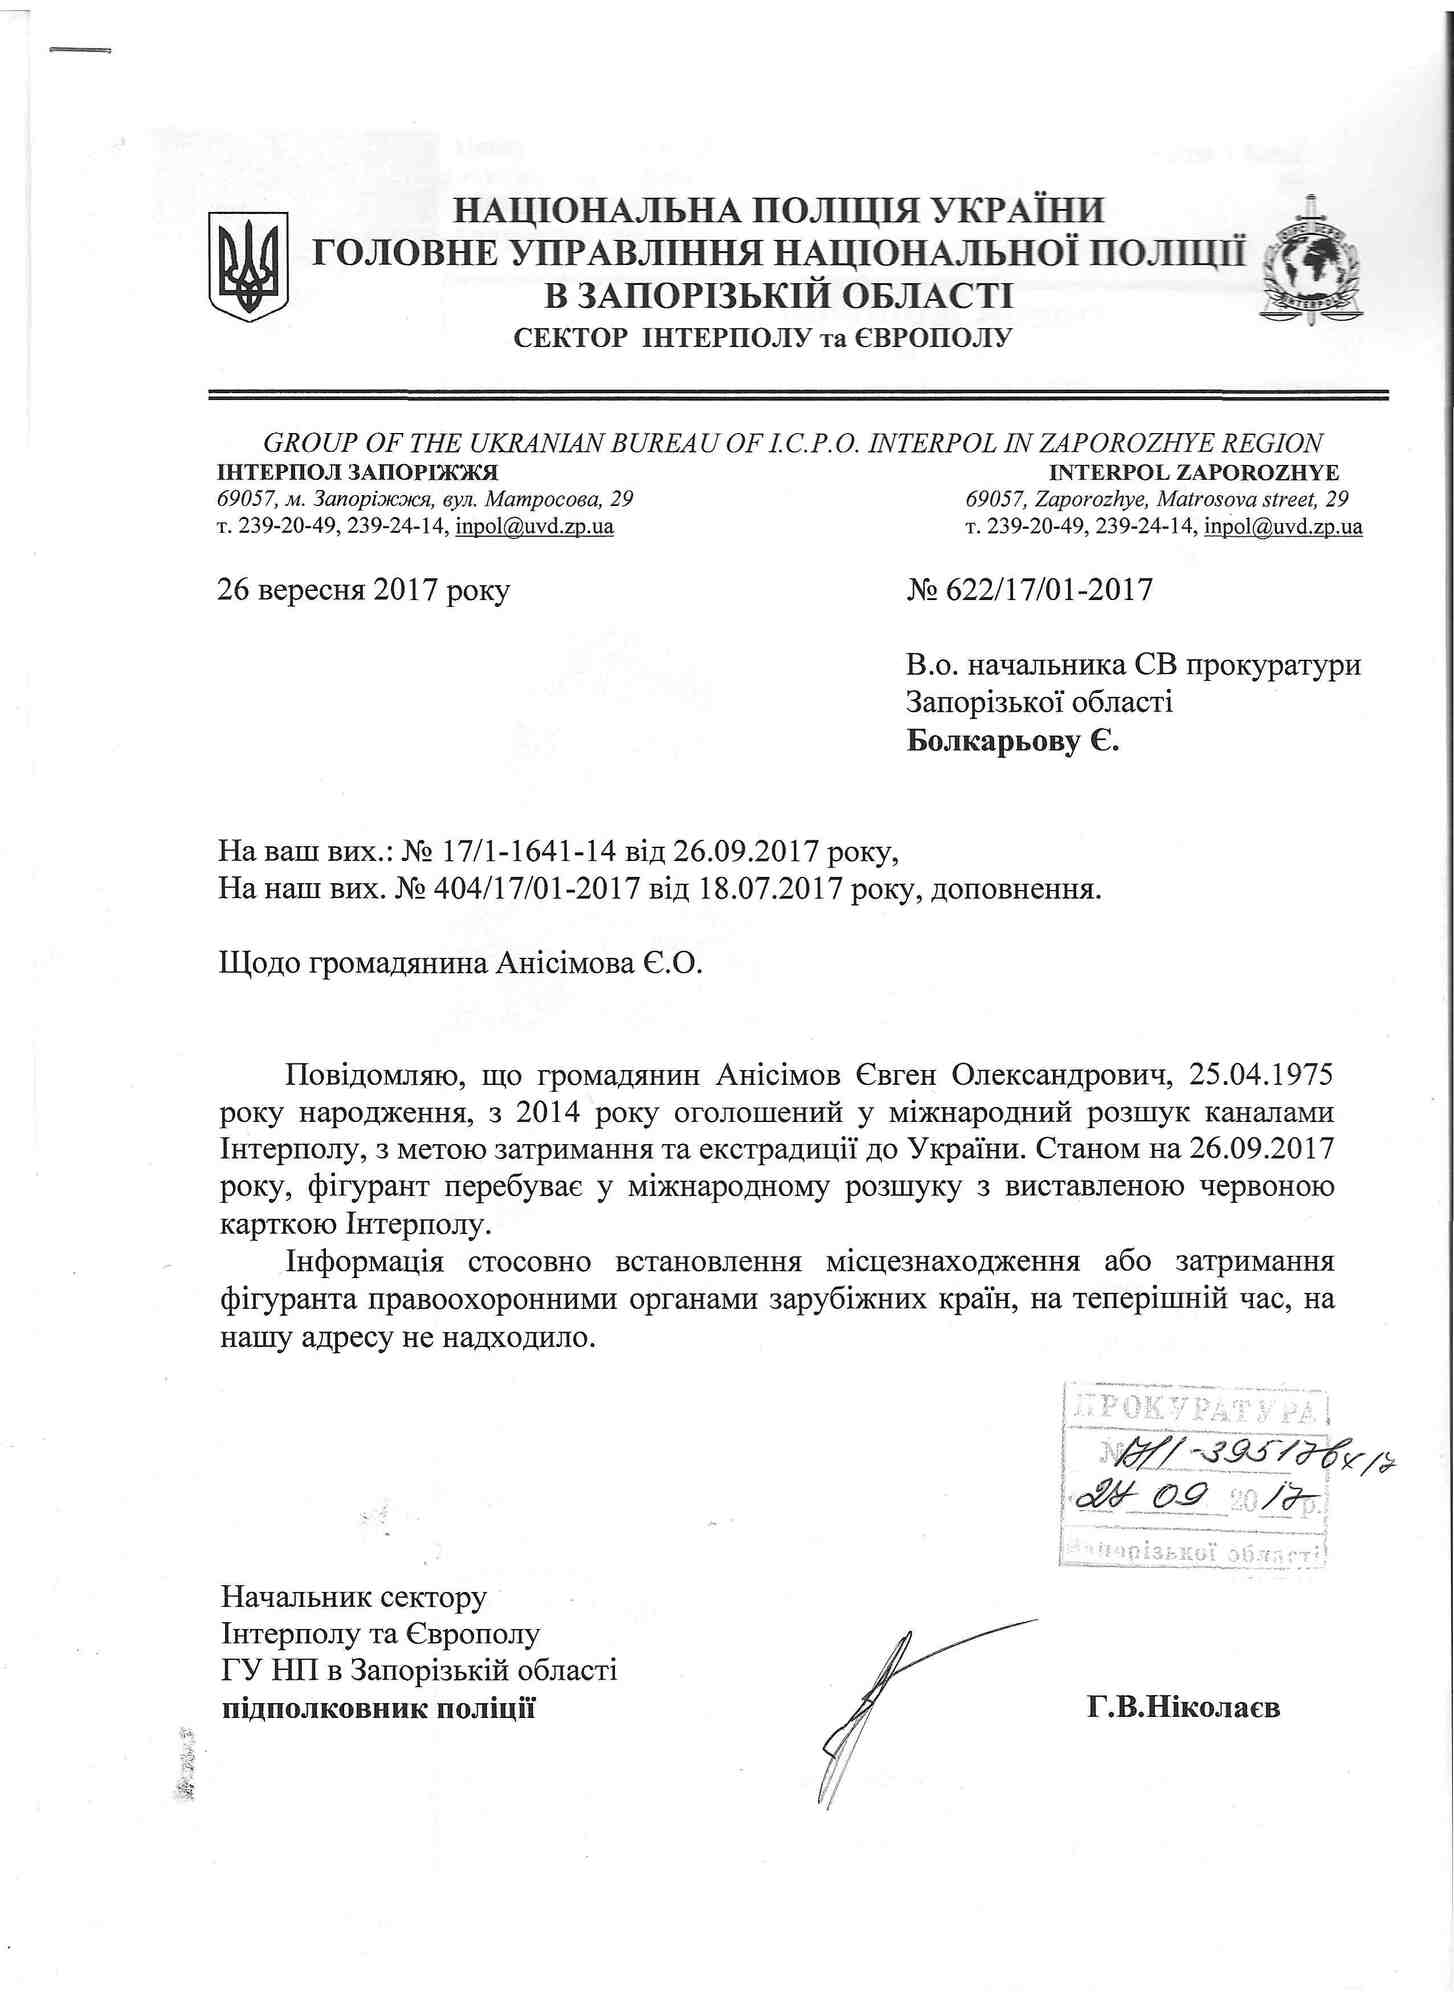 Прокуратура Запорожья ходатайствует о спецрасследовании по делу Анисимова